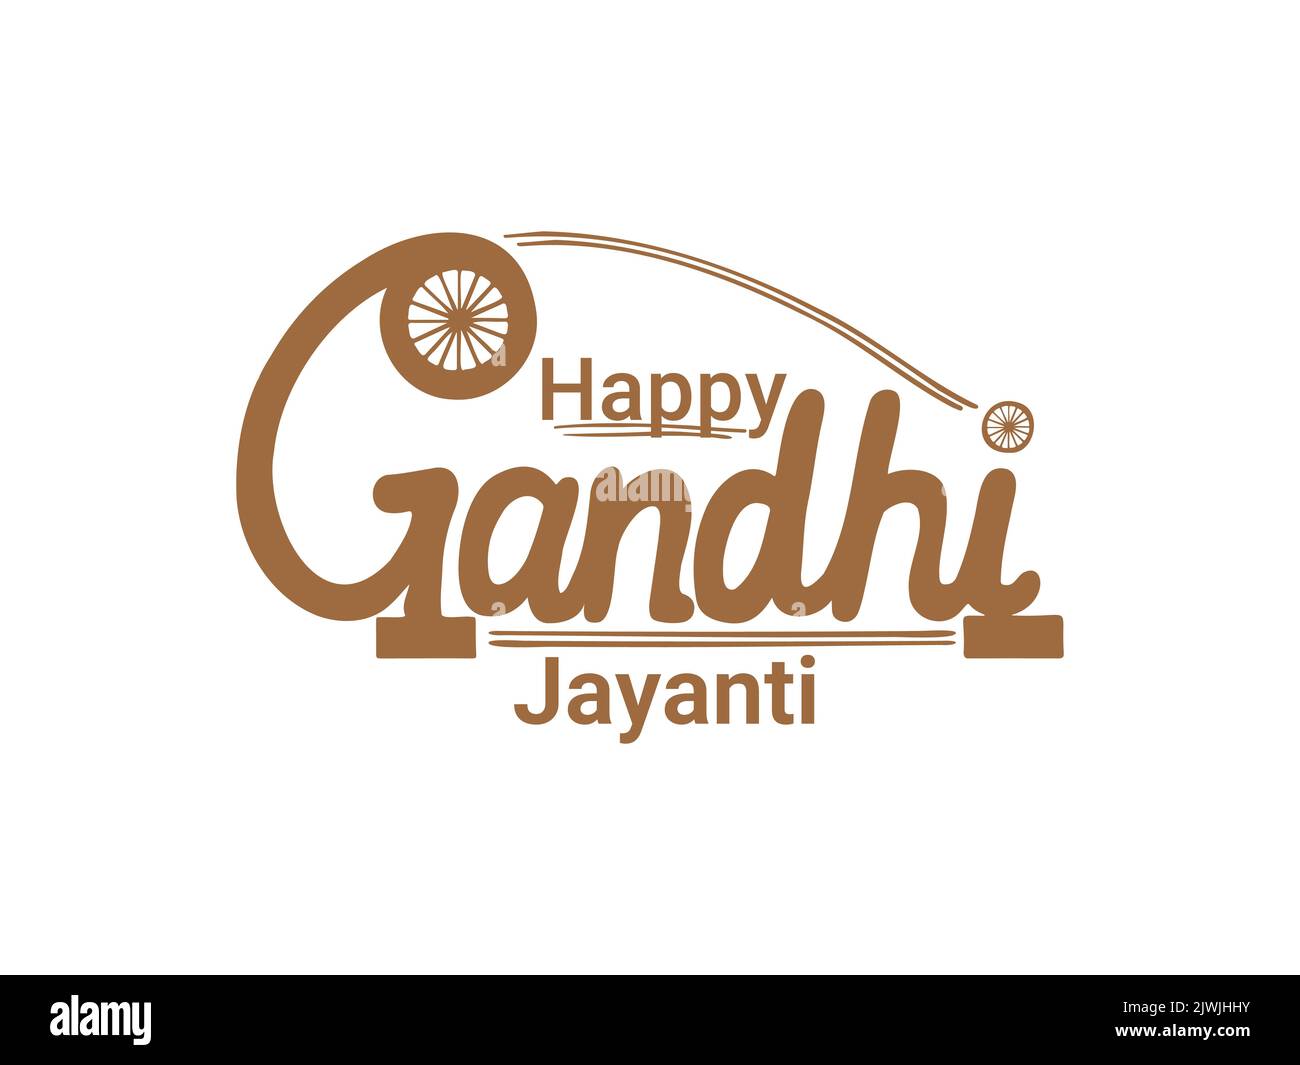 Happy Gandhi Jayanti Hand gezeichnet Typografie charkha Design Vektor Illustration. Thread Spinning wheel Concept Logo Schriftzug. Etikett oder Aufkleber Grafik Stock Vektor